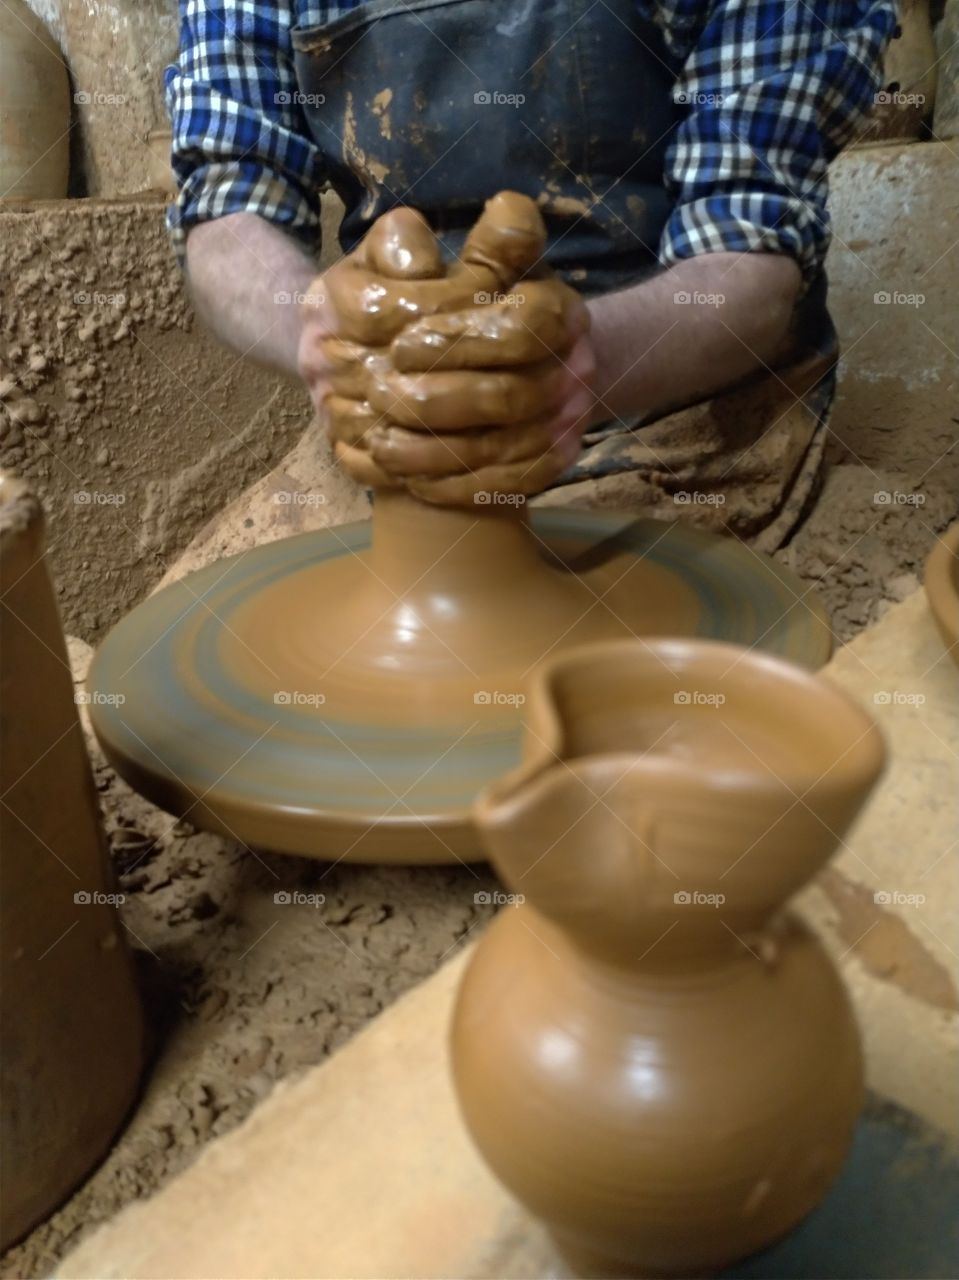 Manos de artesano haciwndo una pieza de barro en el torno